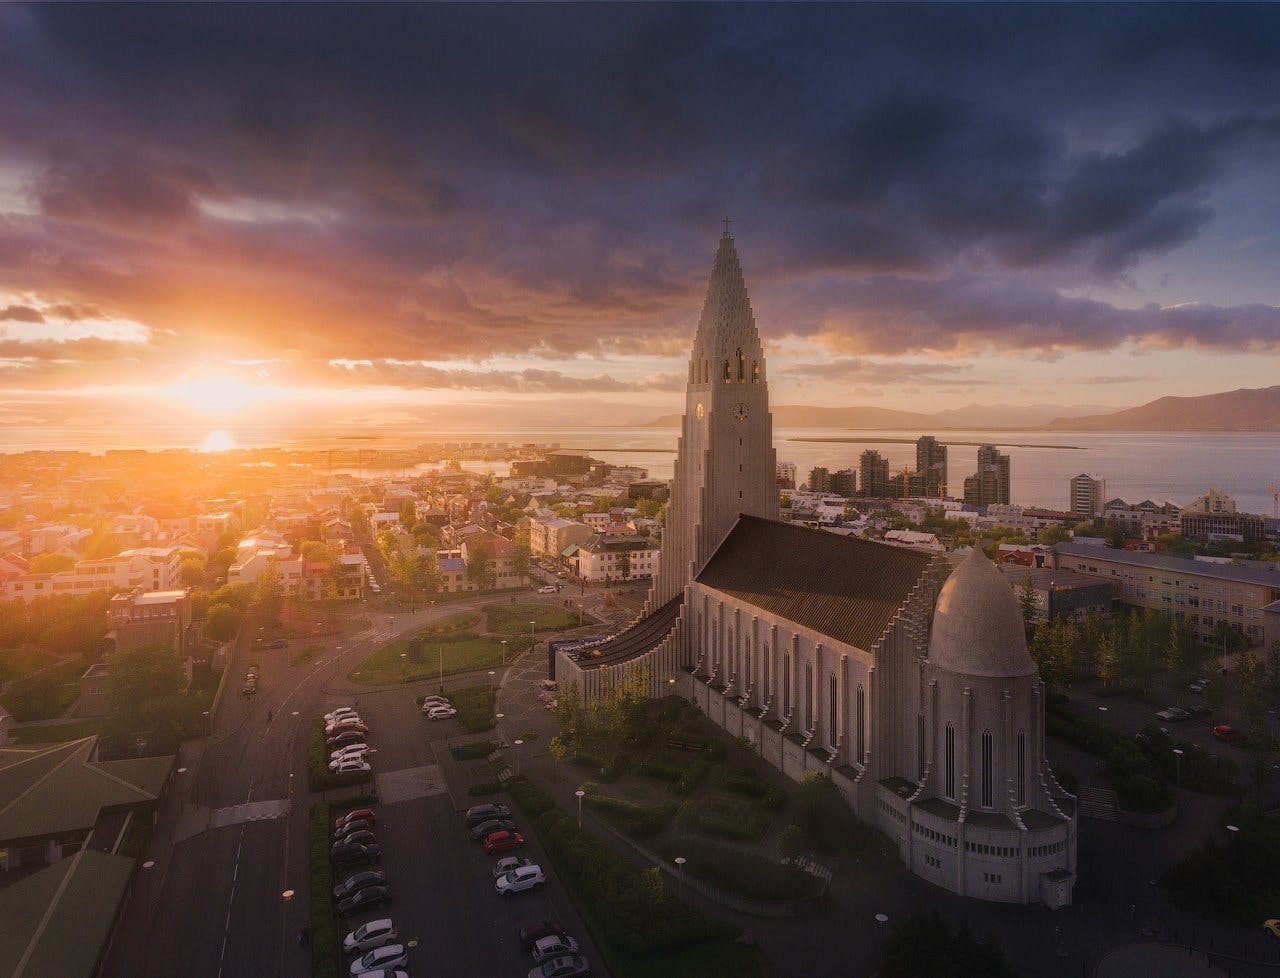 Benvenuto a Reykjavík, la capitale più settentrionale del mondo.